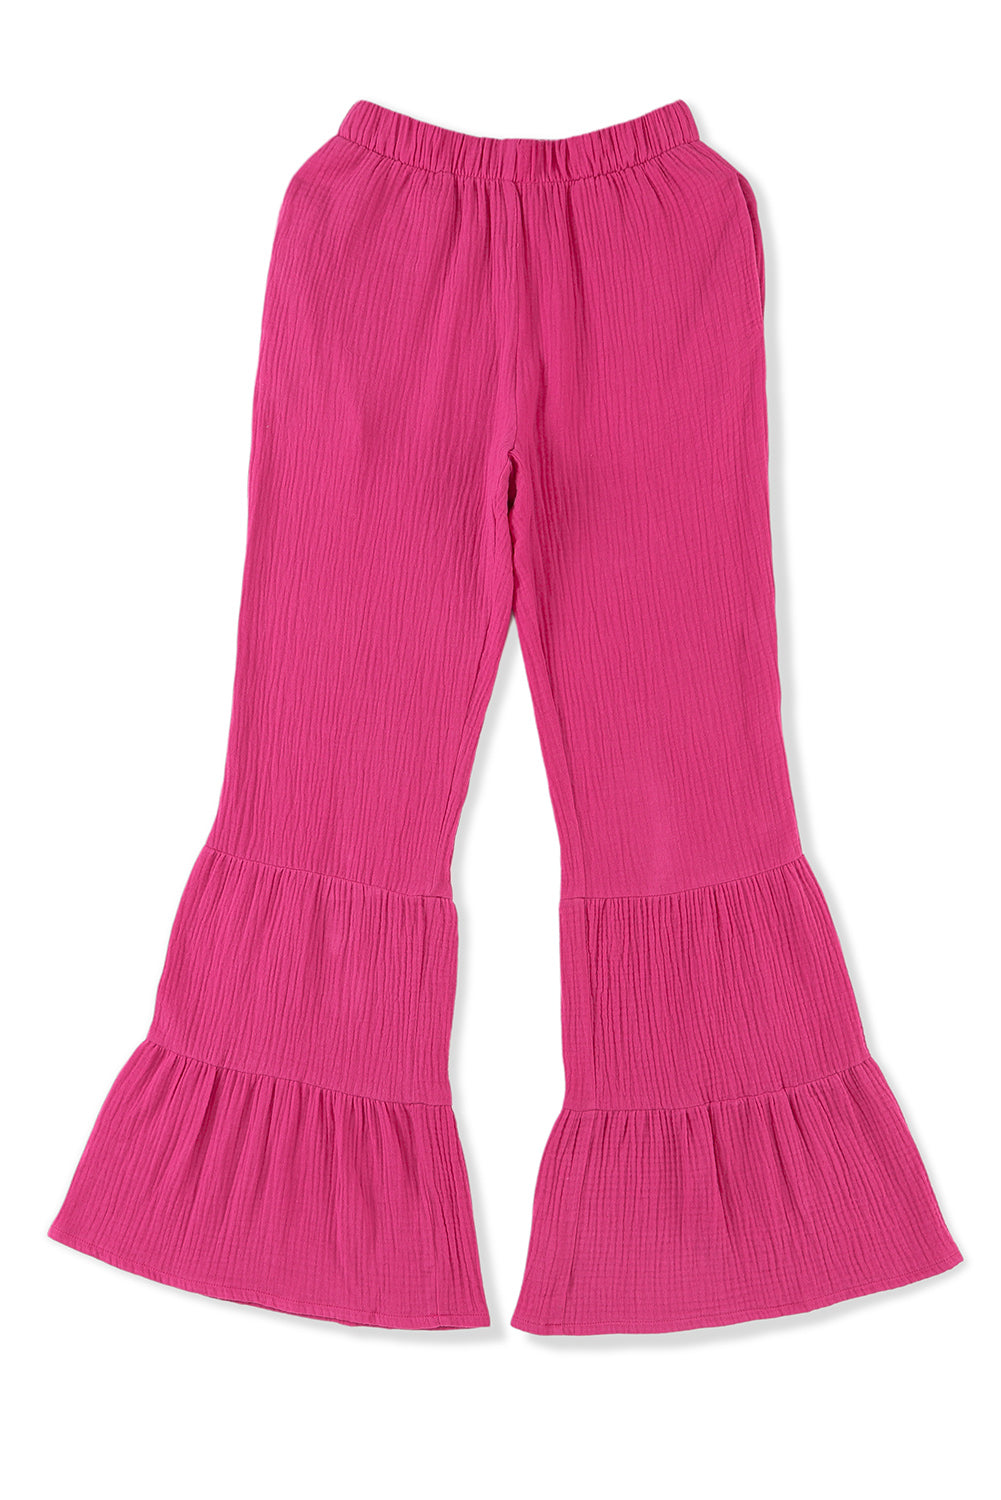 Pantalon taille haute texturé rose à volants et cloche